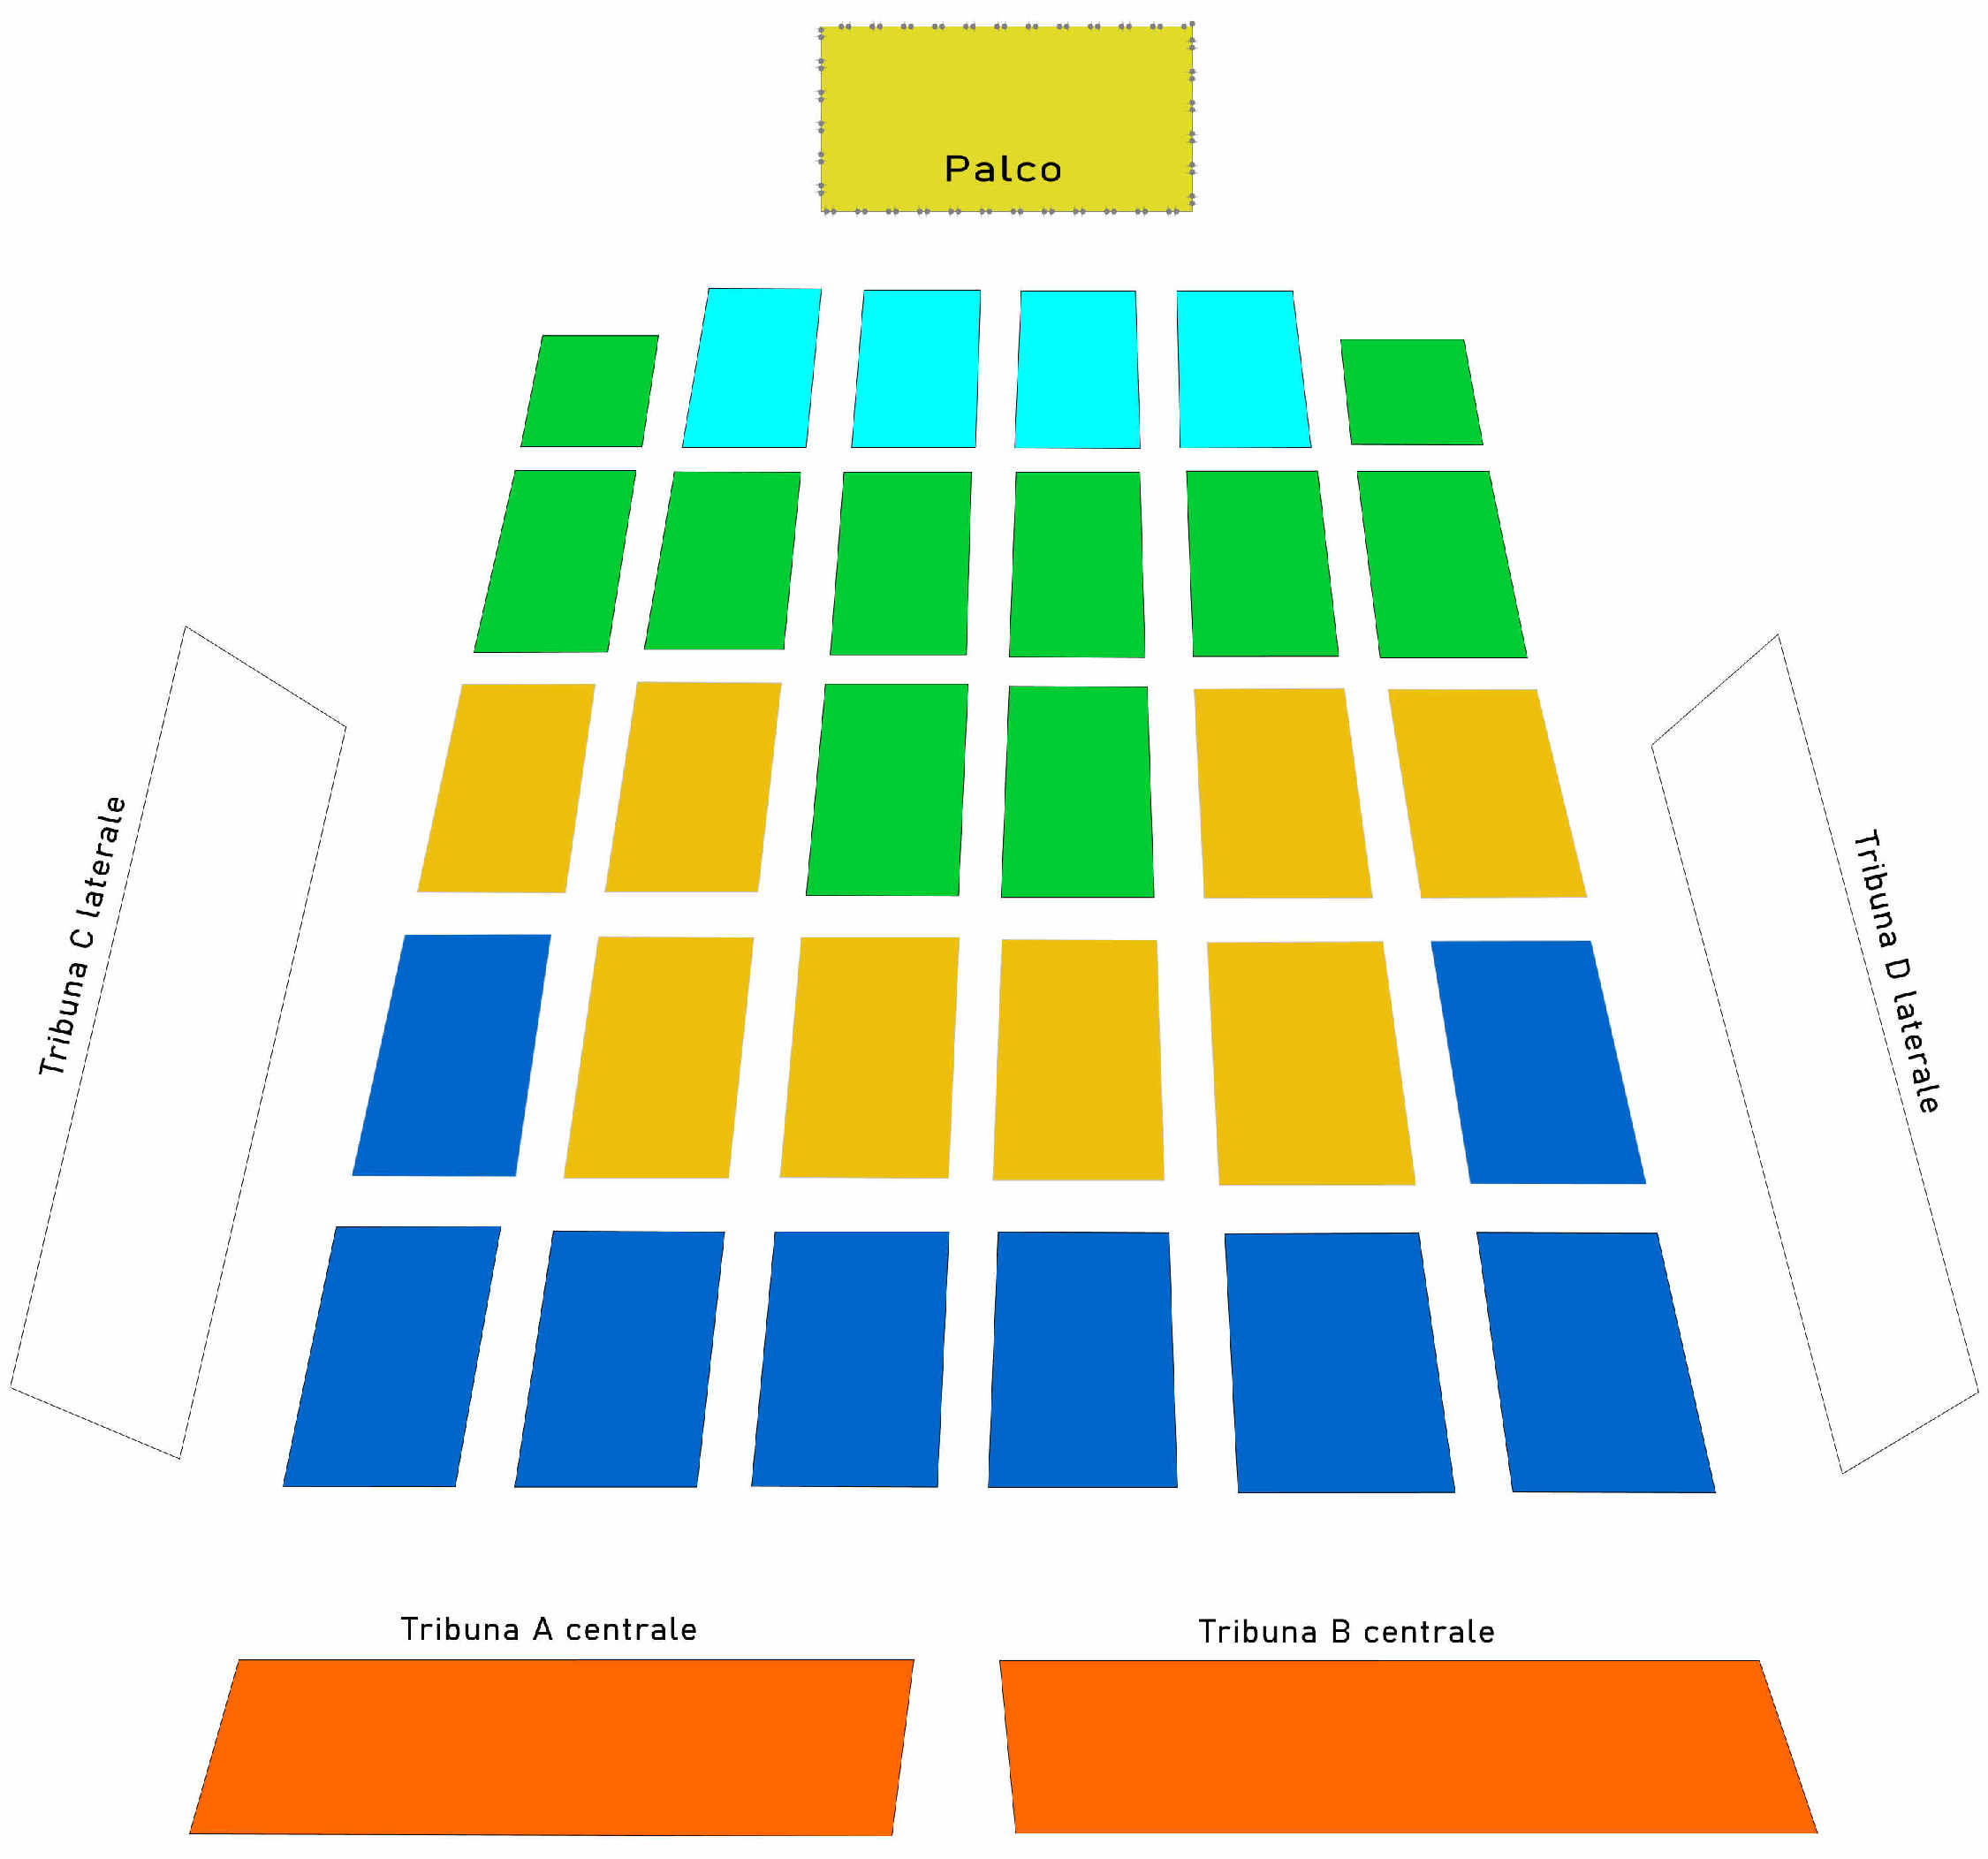 Palco Teatro Valle dei Templi Sabato 17 settembre 2022